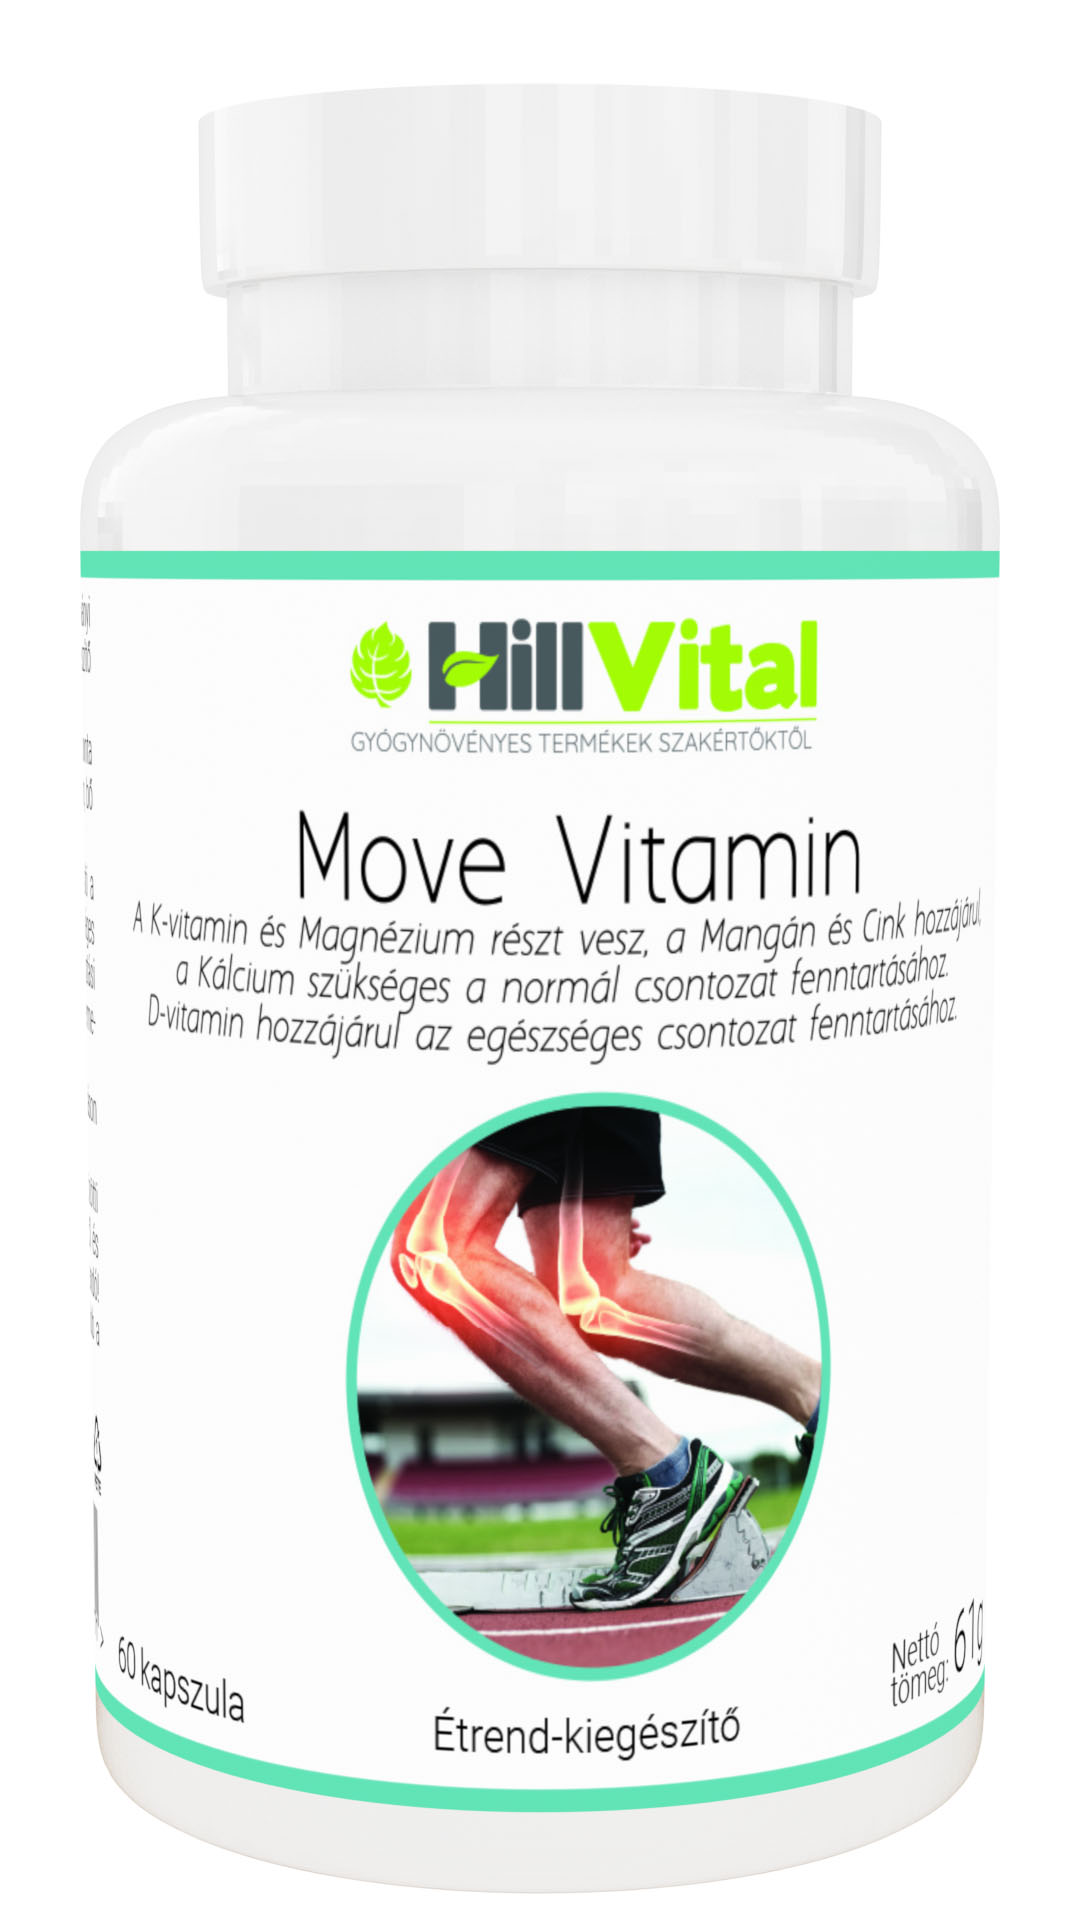 Move vitamin